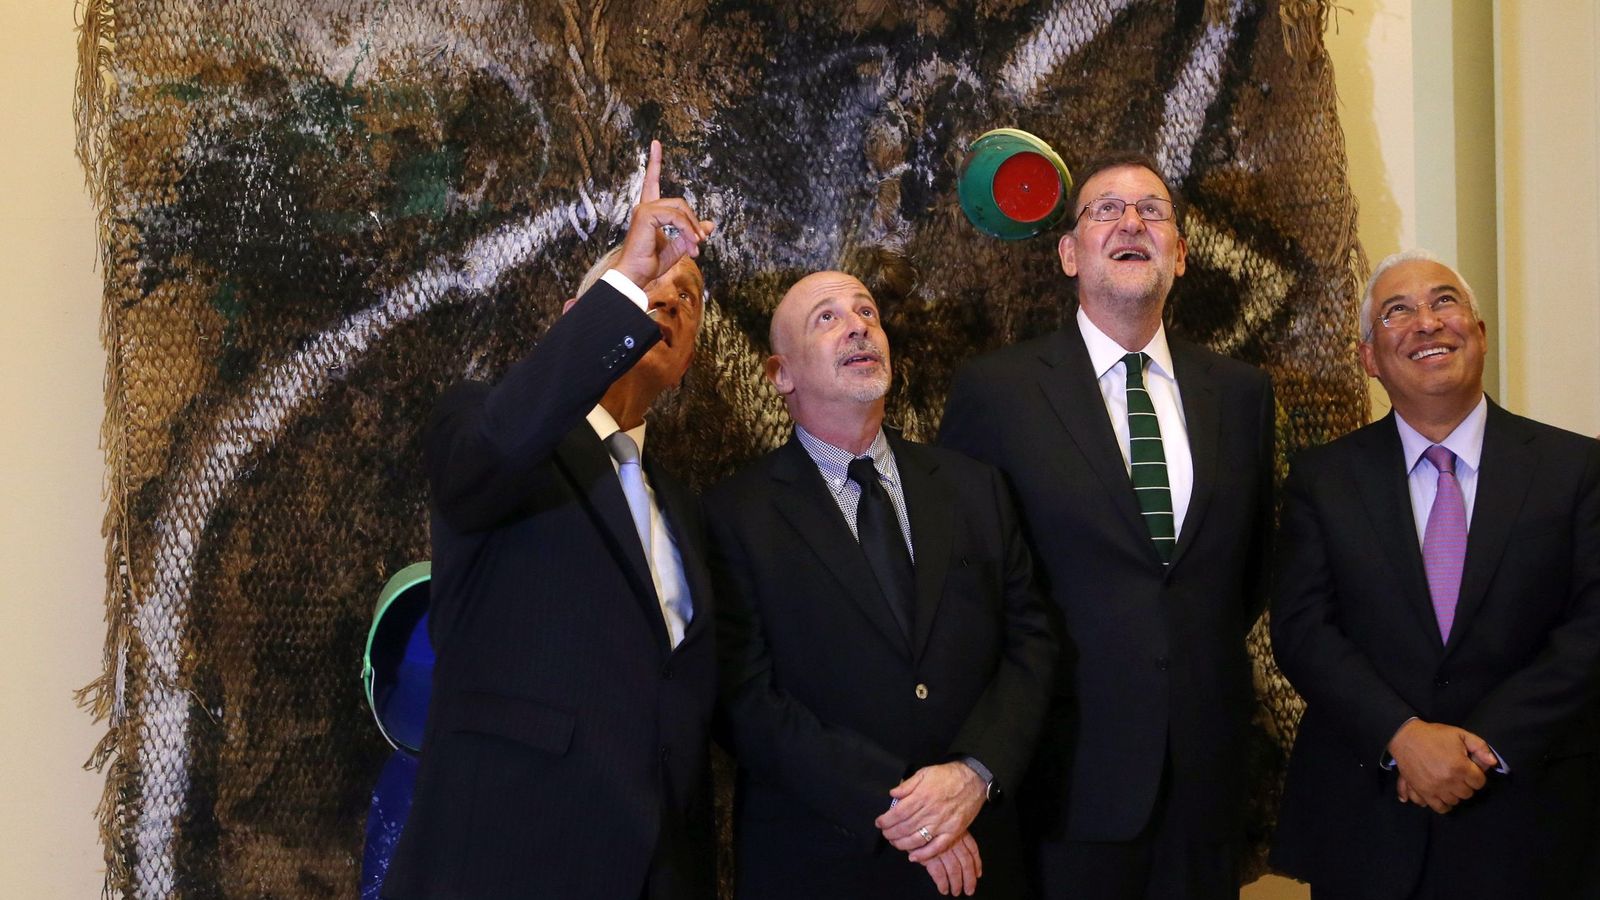 Foto: El presidente del Gobierno en funciones, Mariano Rajoy, en una exposición de Joan Miró en Oporto junto con el presidente de Portugal, Marcelo Rebelo de Sousa, y el primer ministro, Antonio Costa. (EFE)